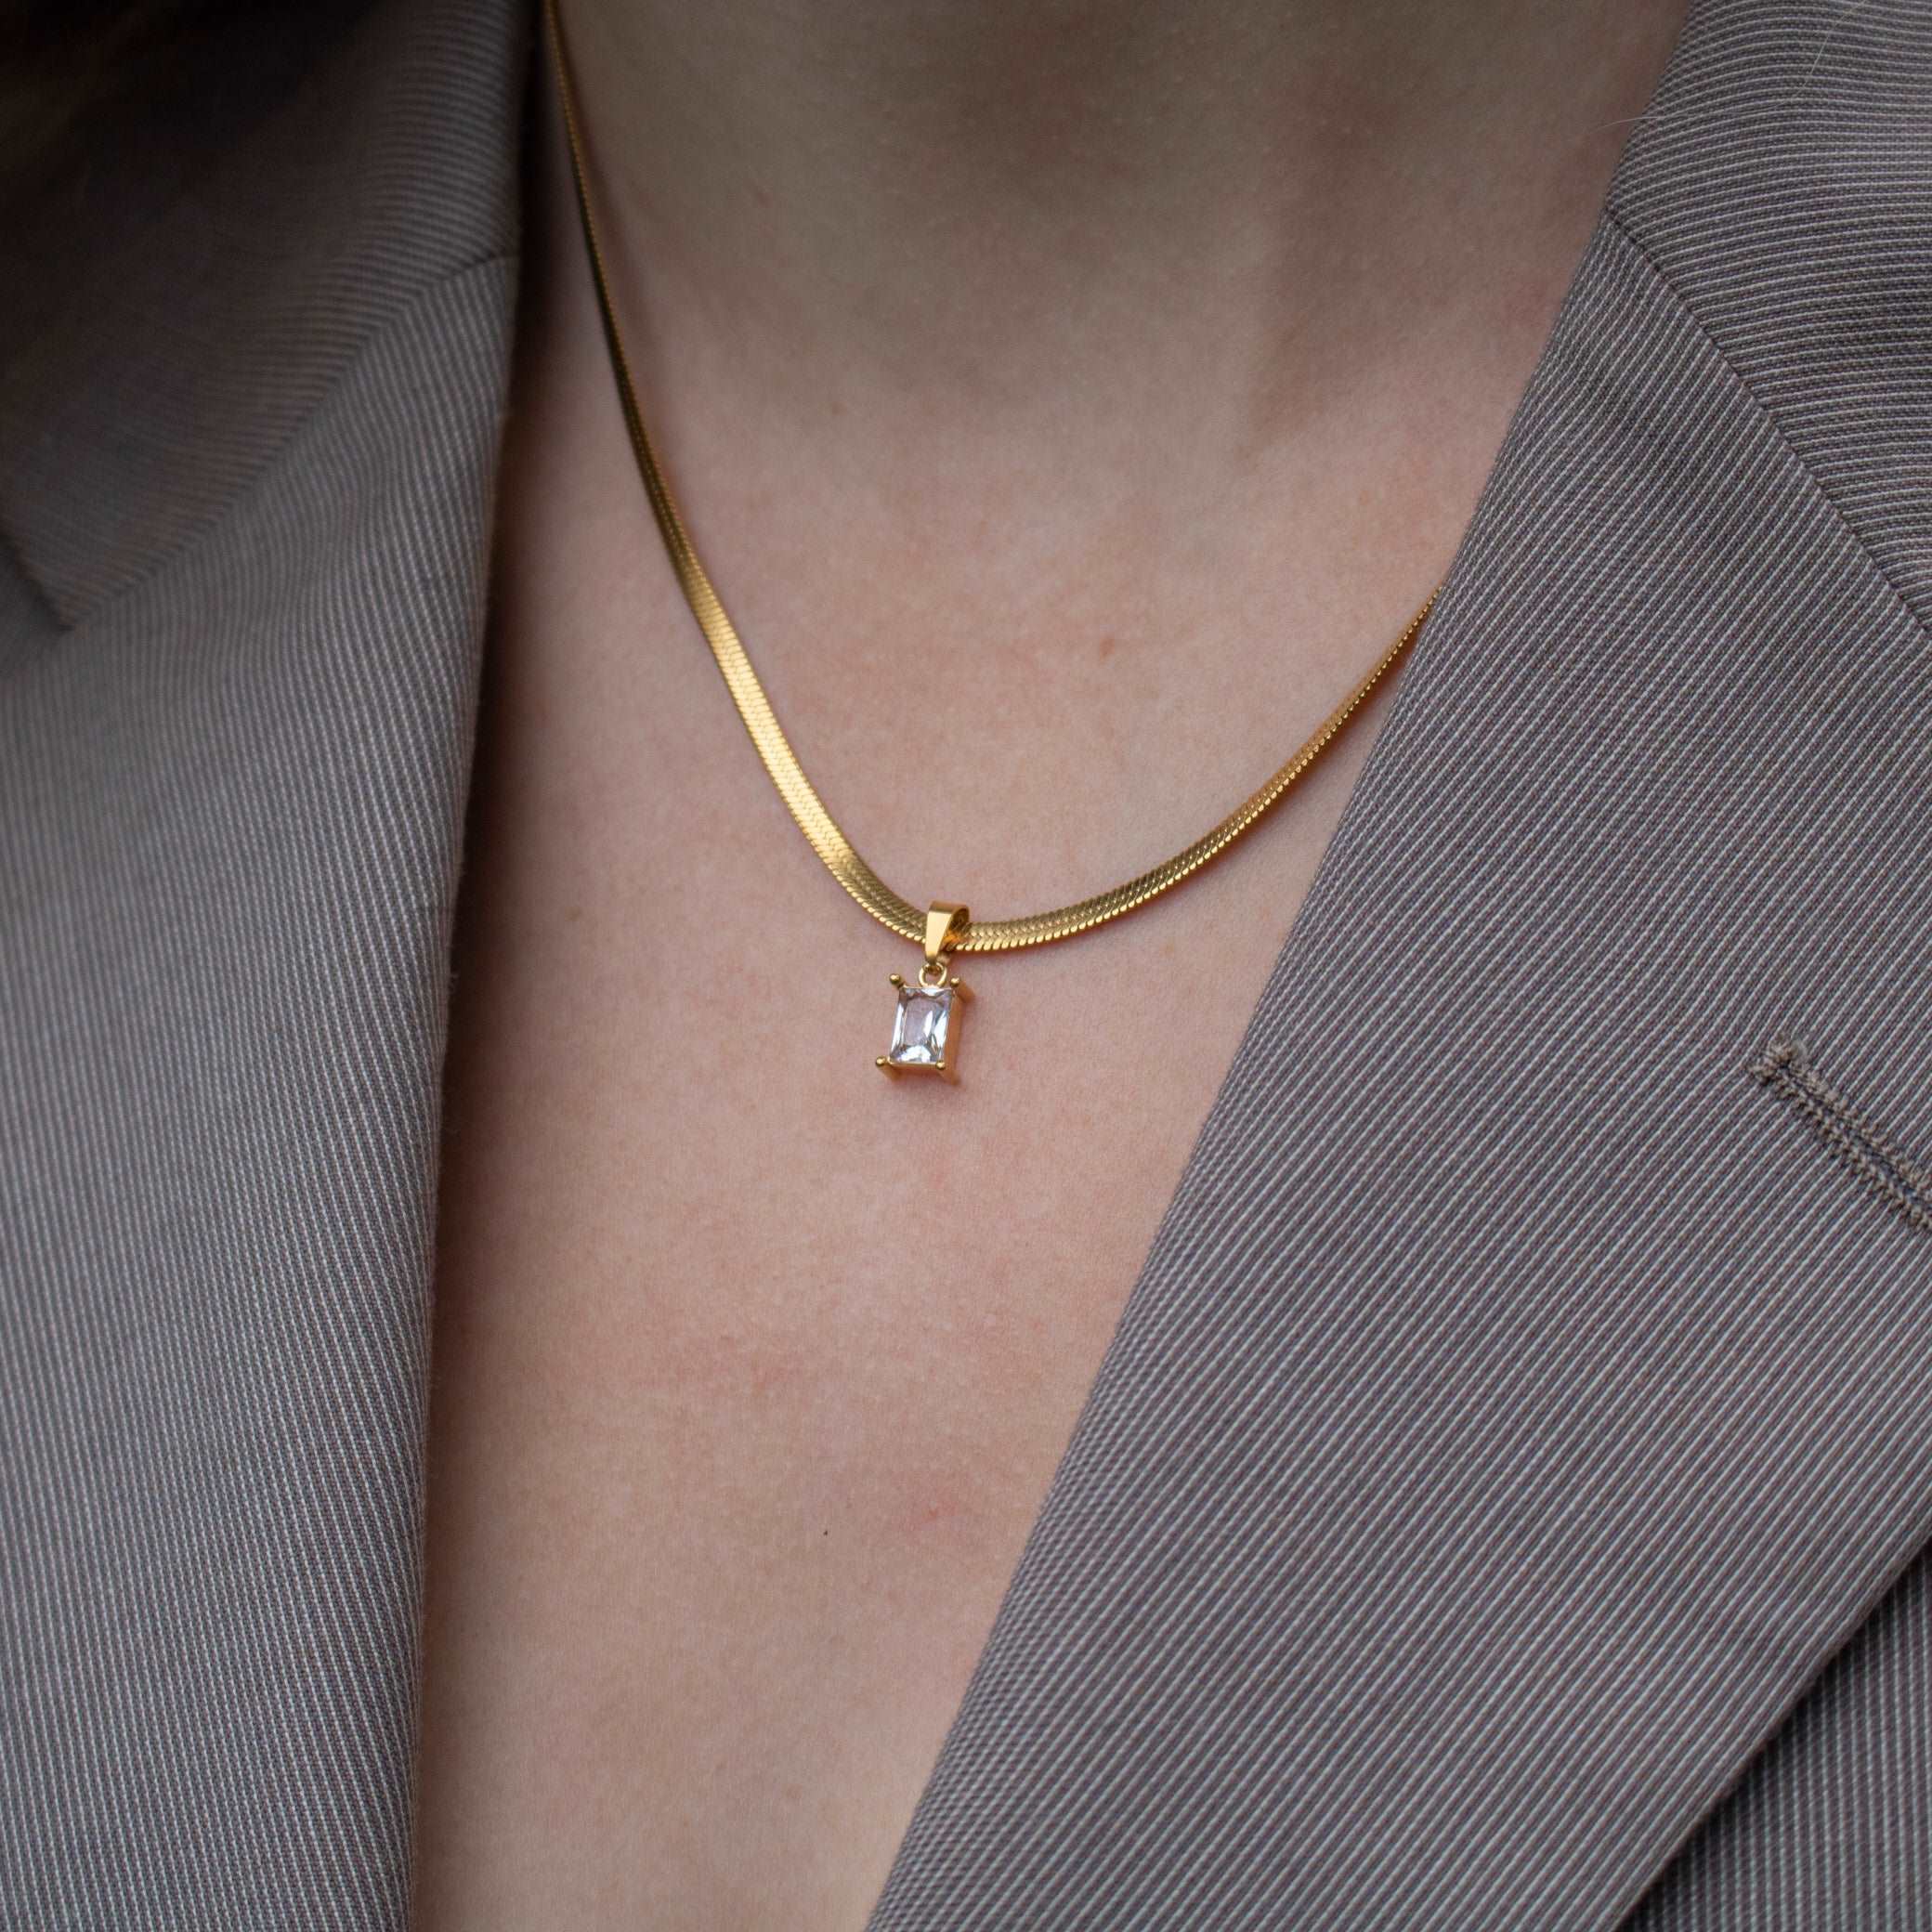 Noel Herringbone Necklace with Pendant